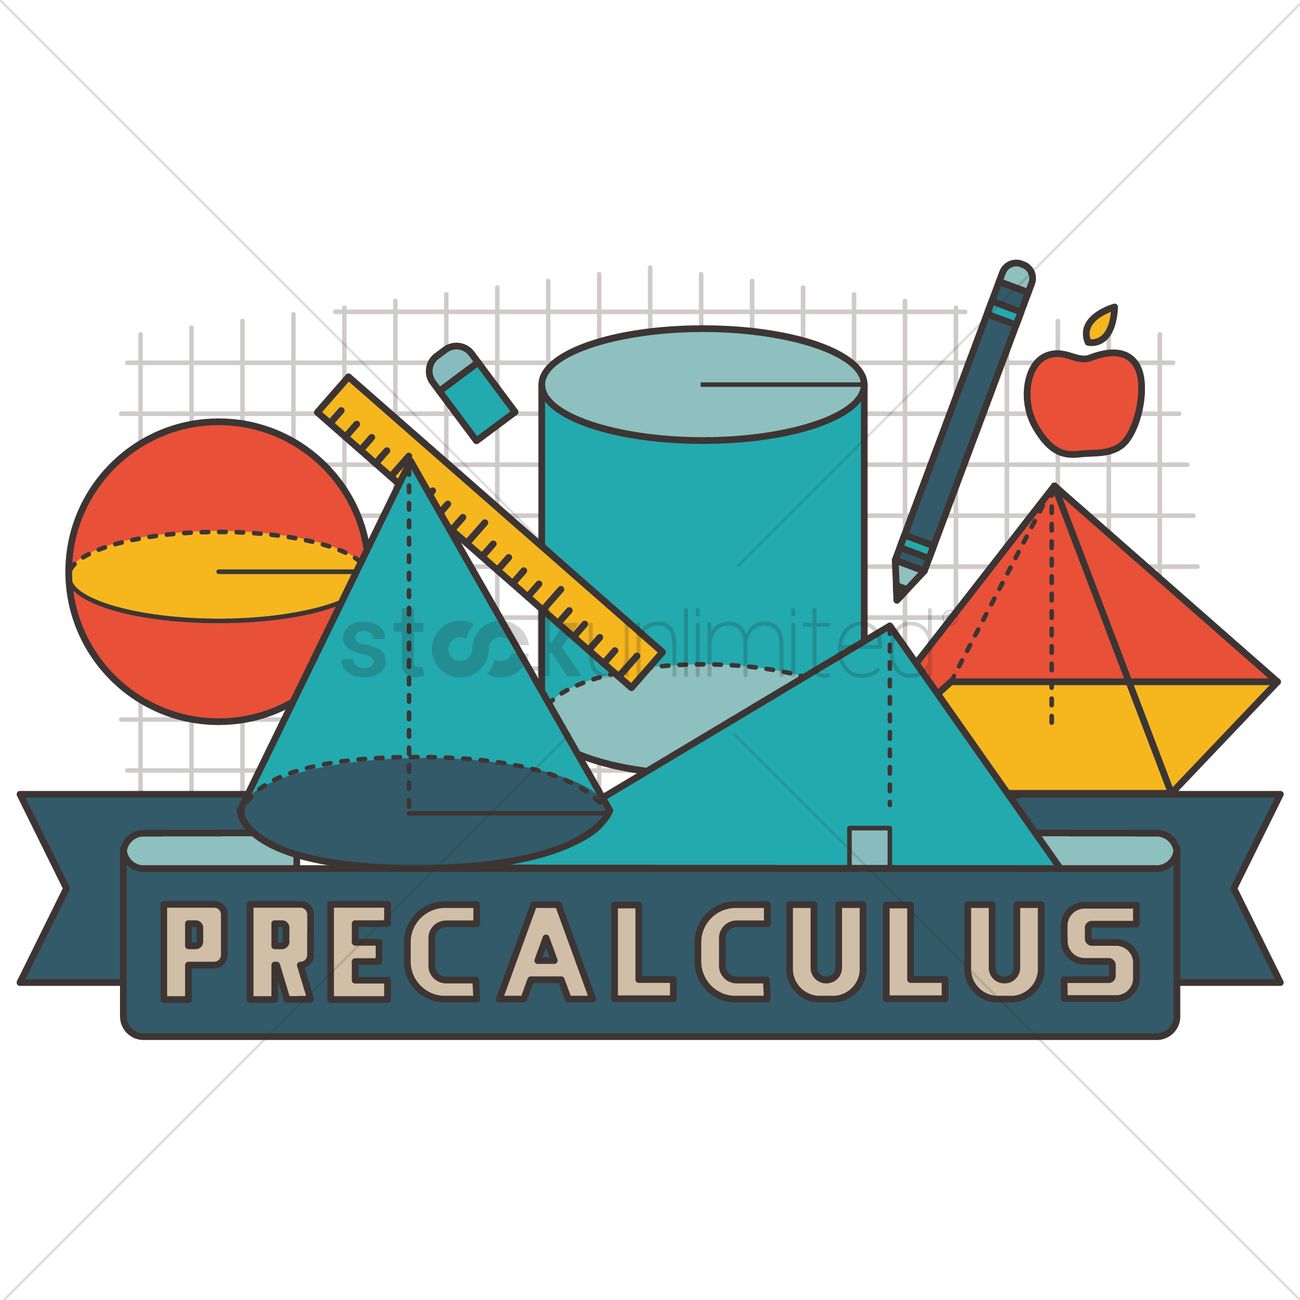 PRE-CALCULUS